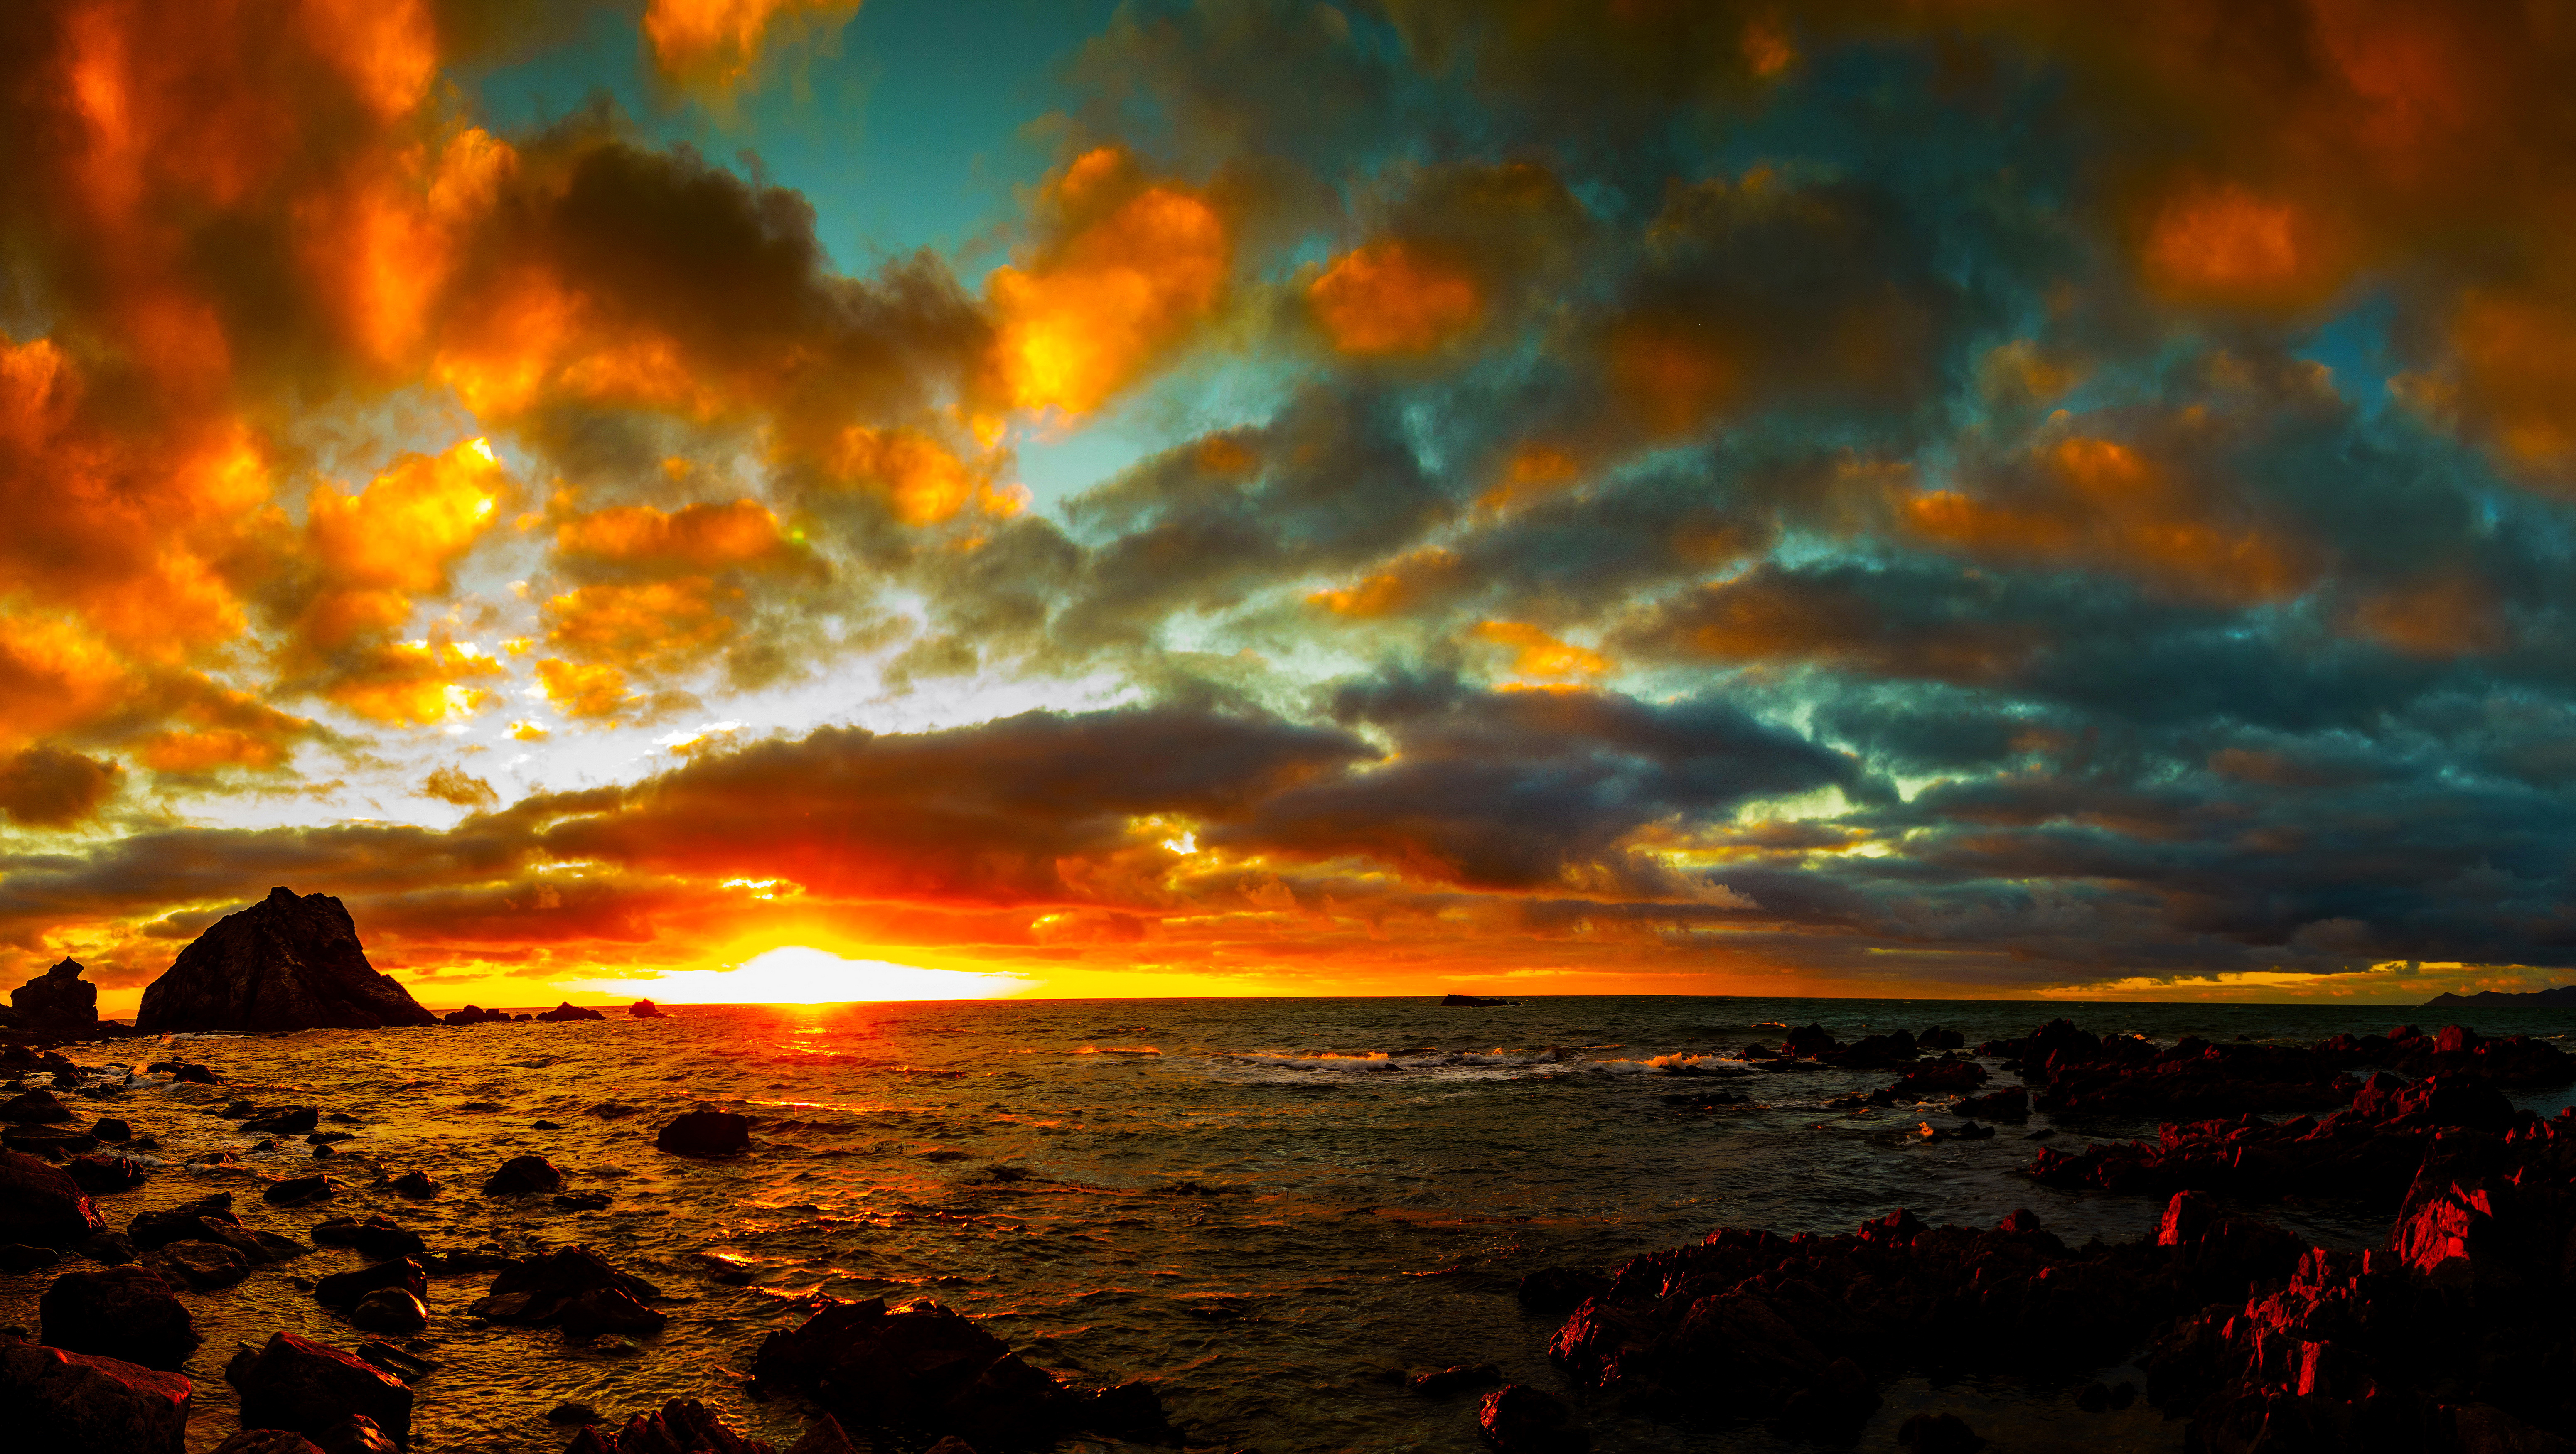 Скачать обои бесплатно Небо, Море, Облака, Горизонт, Океан, Земля/природа, Закат Солнца, Оранжевый Цвет) картинка на рабочий стол ПК